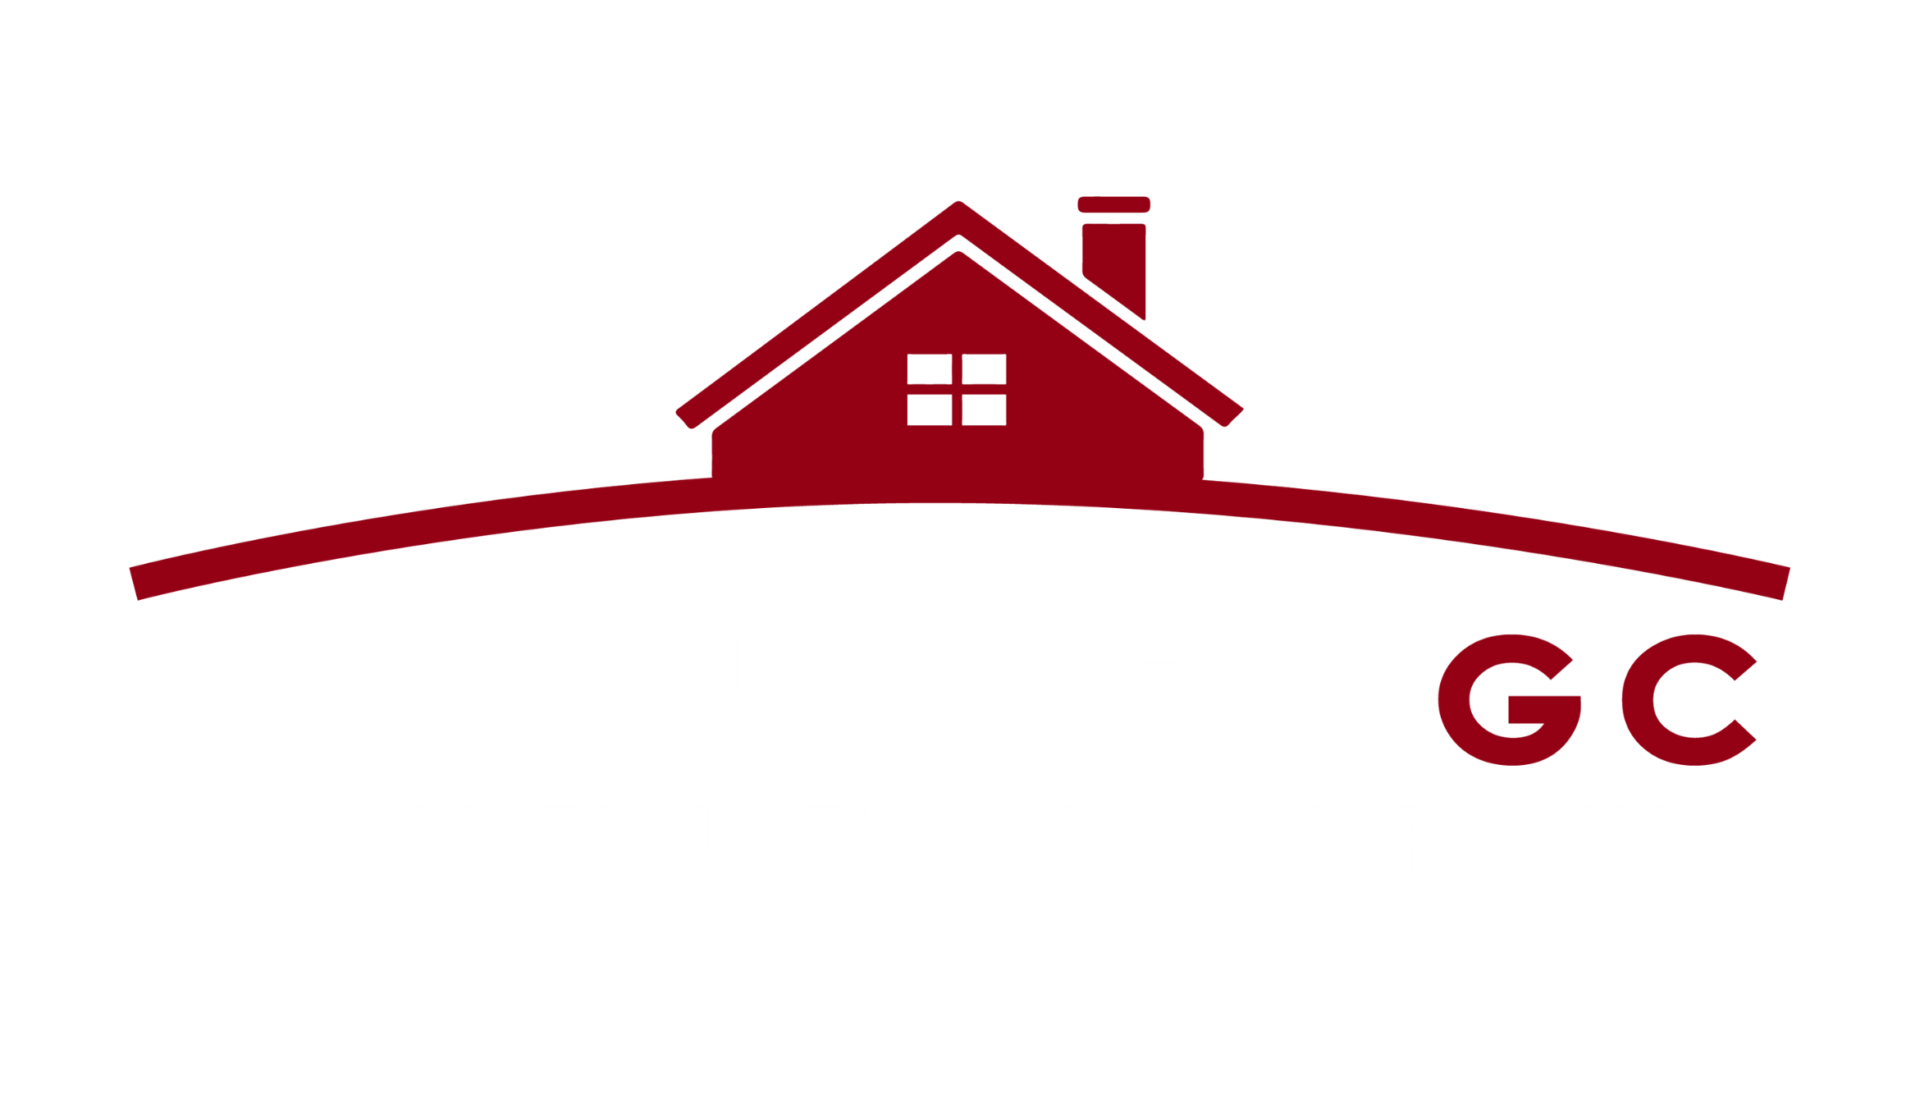 Frontier GC